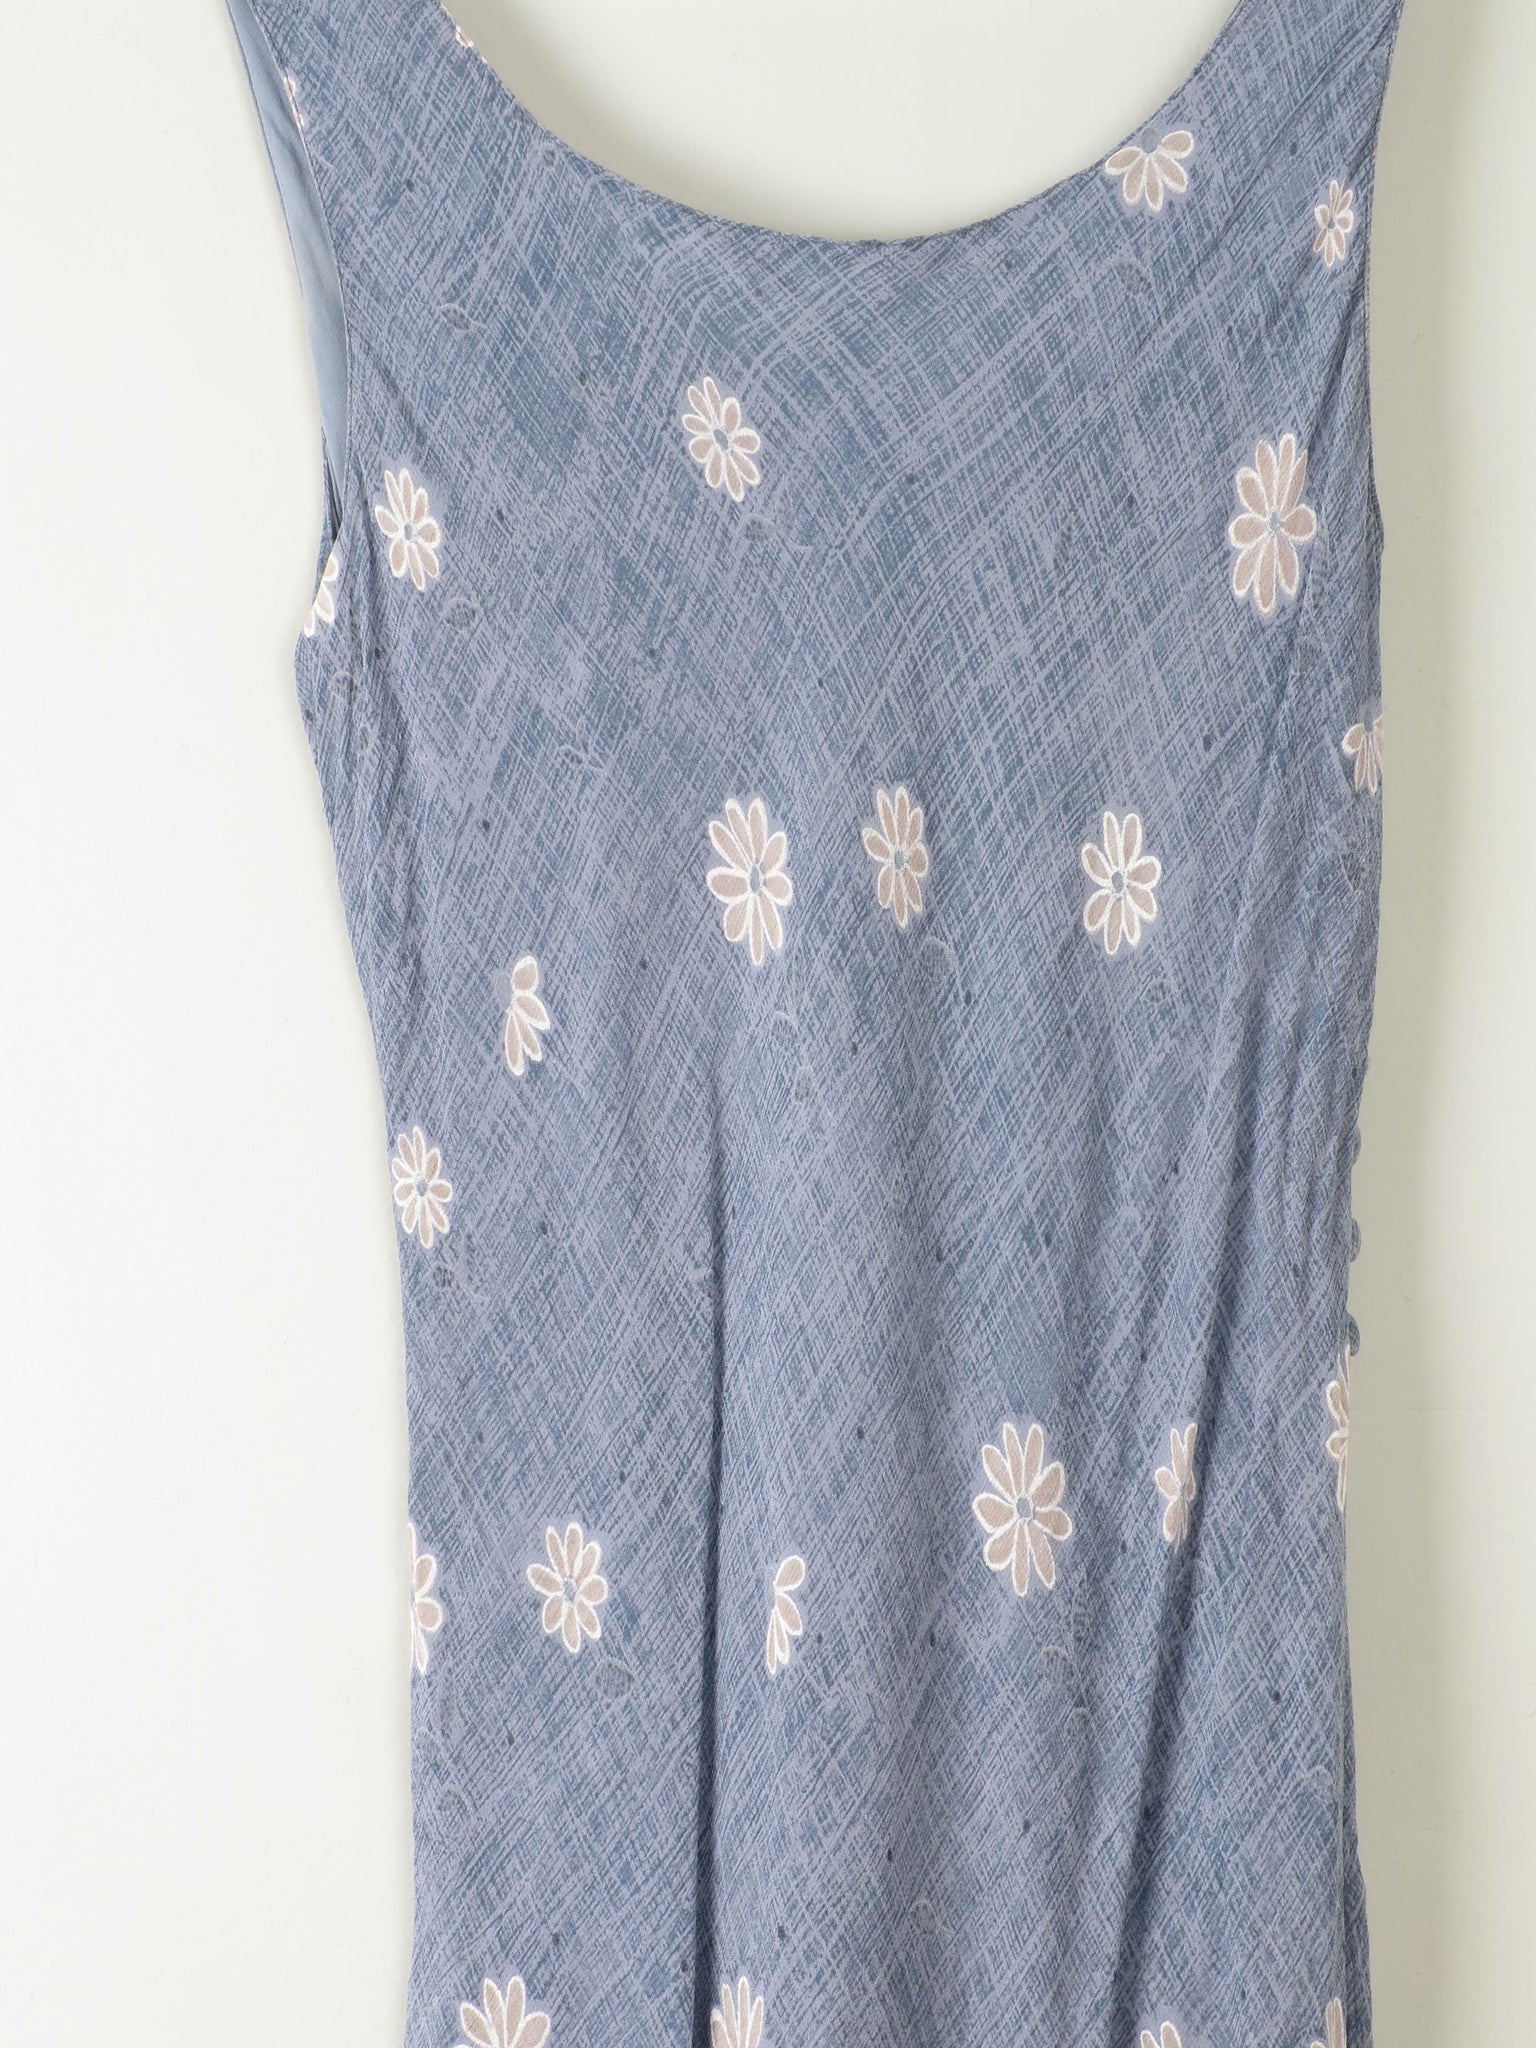 Vintage Blue Floral Slip Dress XS/S - The Harlequin